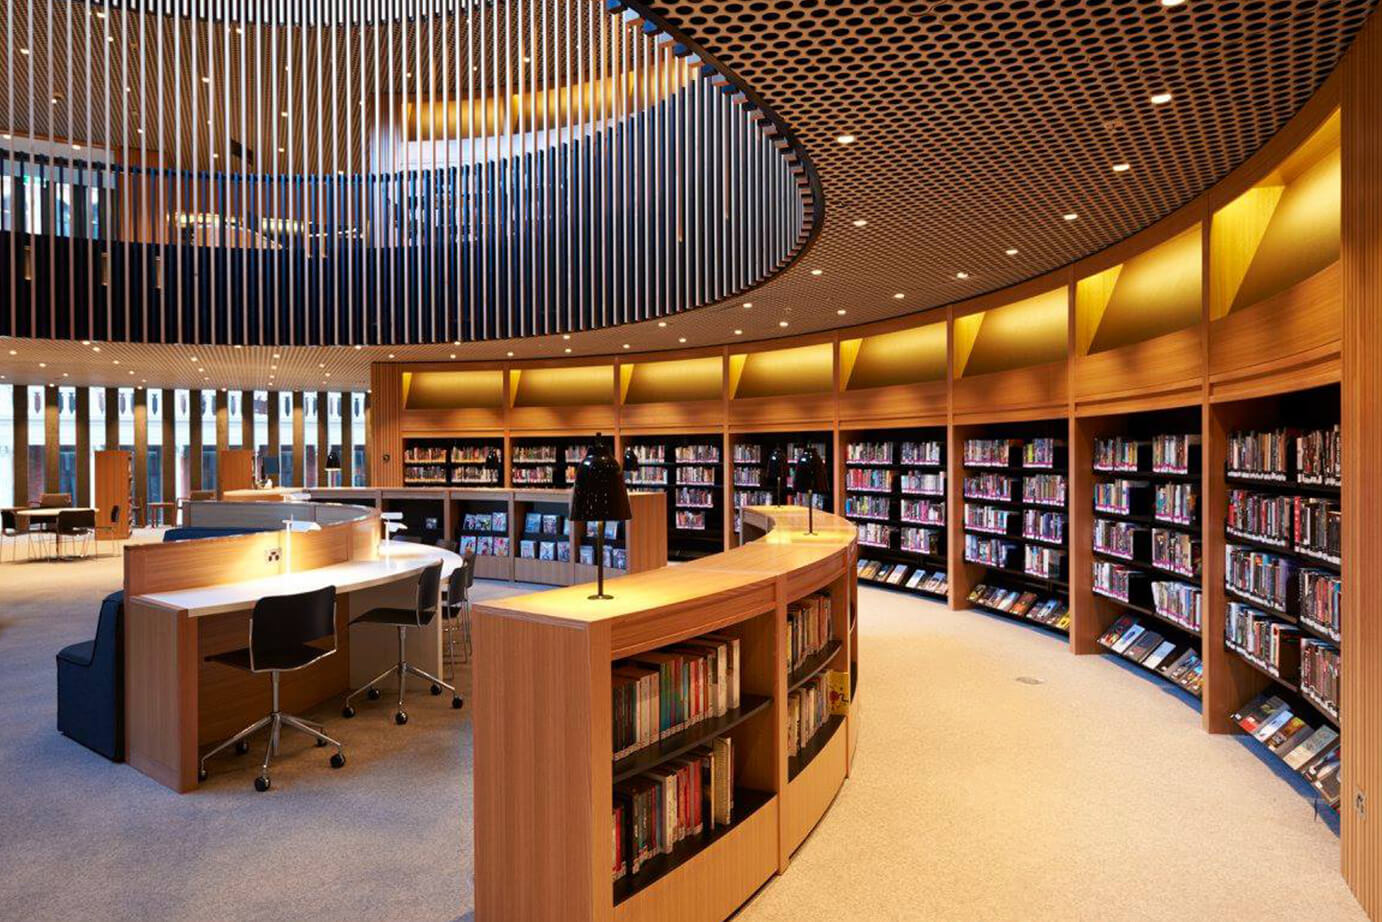 Common library. Библиотека Японии читальный зал. Йельский университет библиотека. Современная библиотека. Интерьер современной библиотеки.